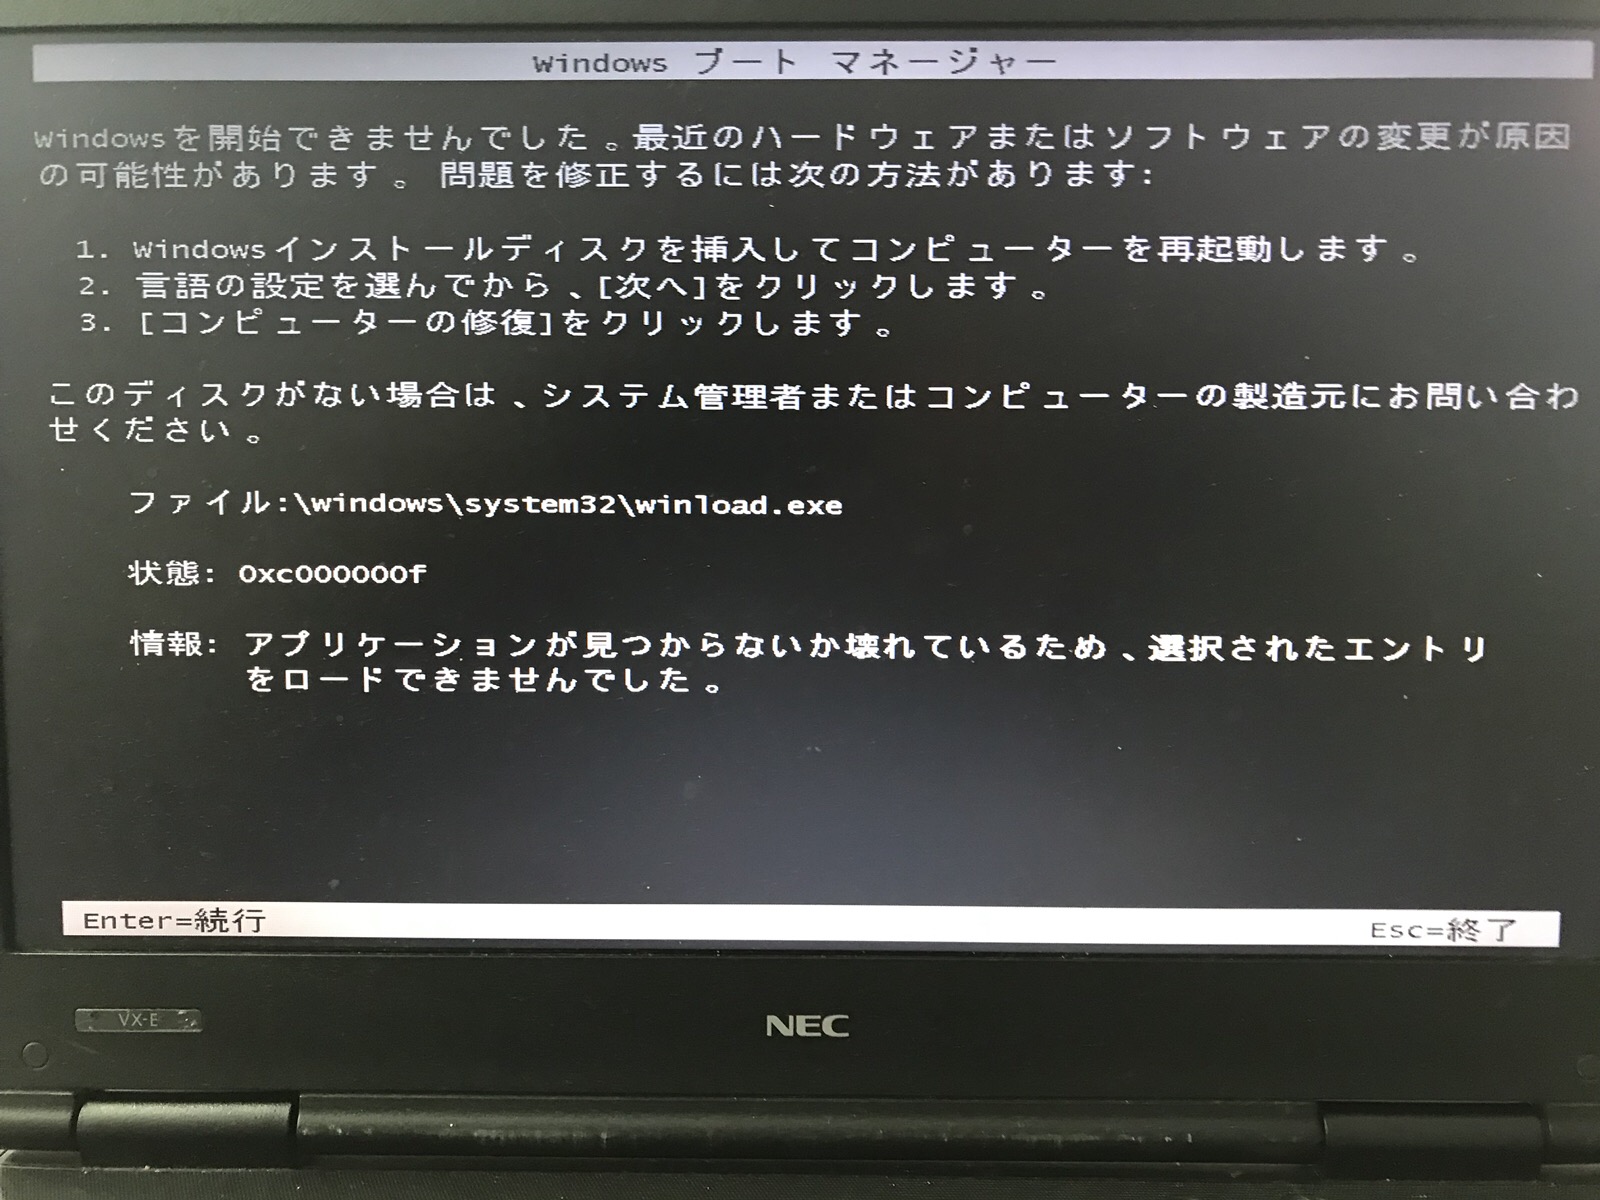 福岡県福岡市 ノートパソコンが起動しない／NEC Windows 7のイメージ